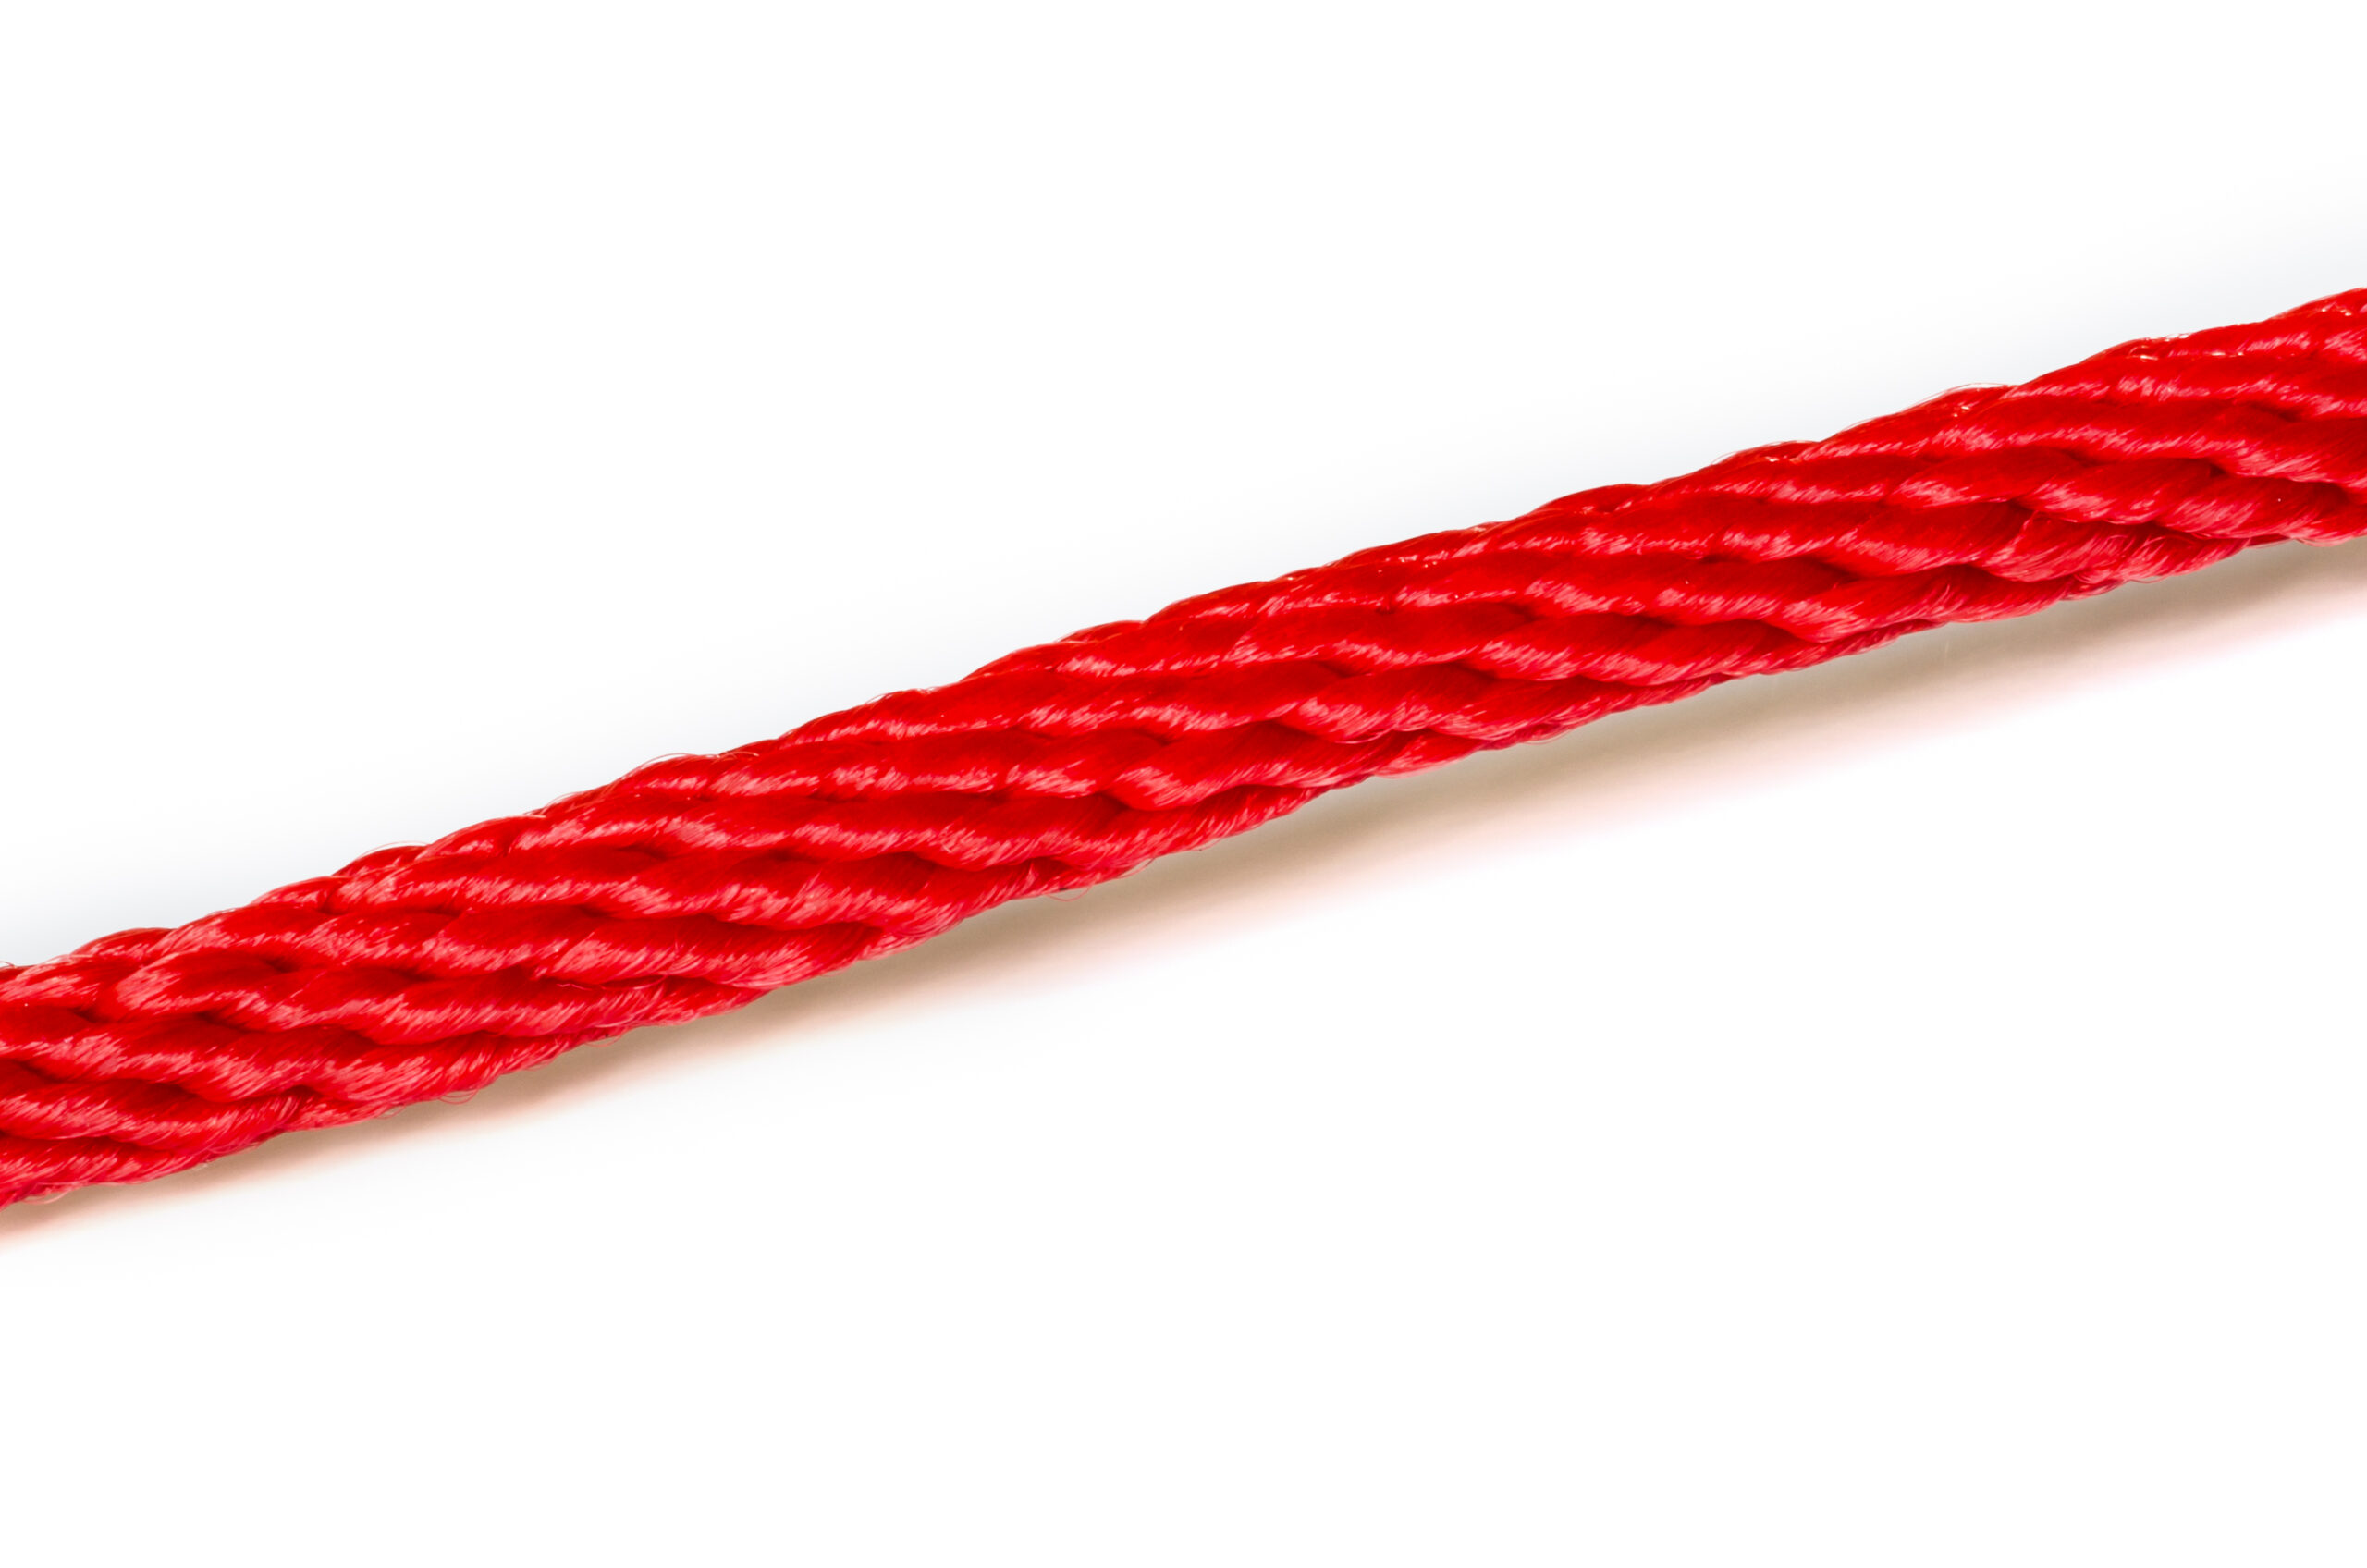 Den røde tråd skal spindes – vil du hjælpe?